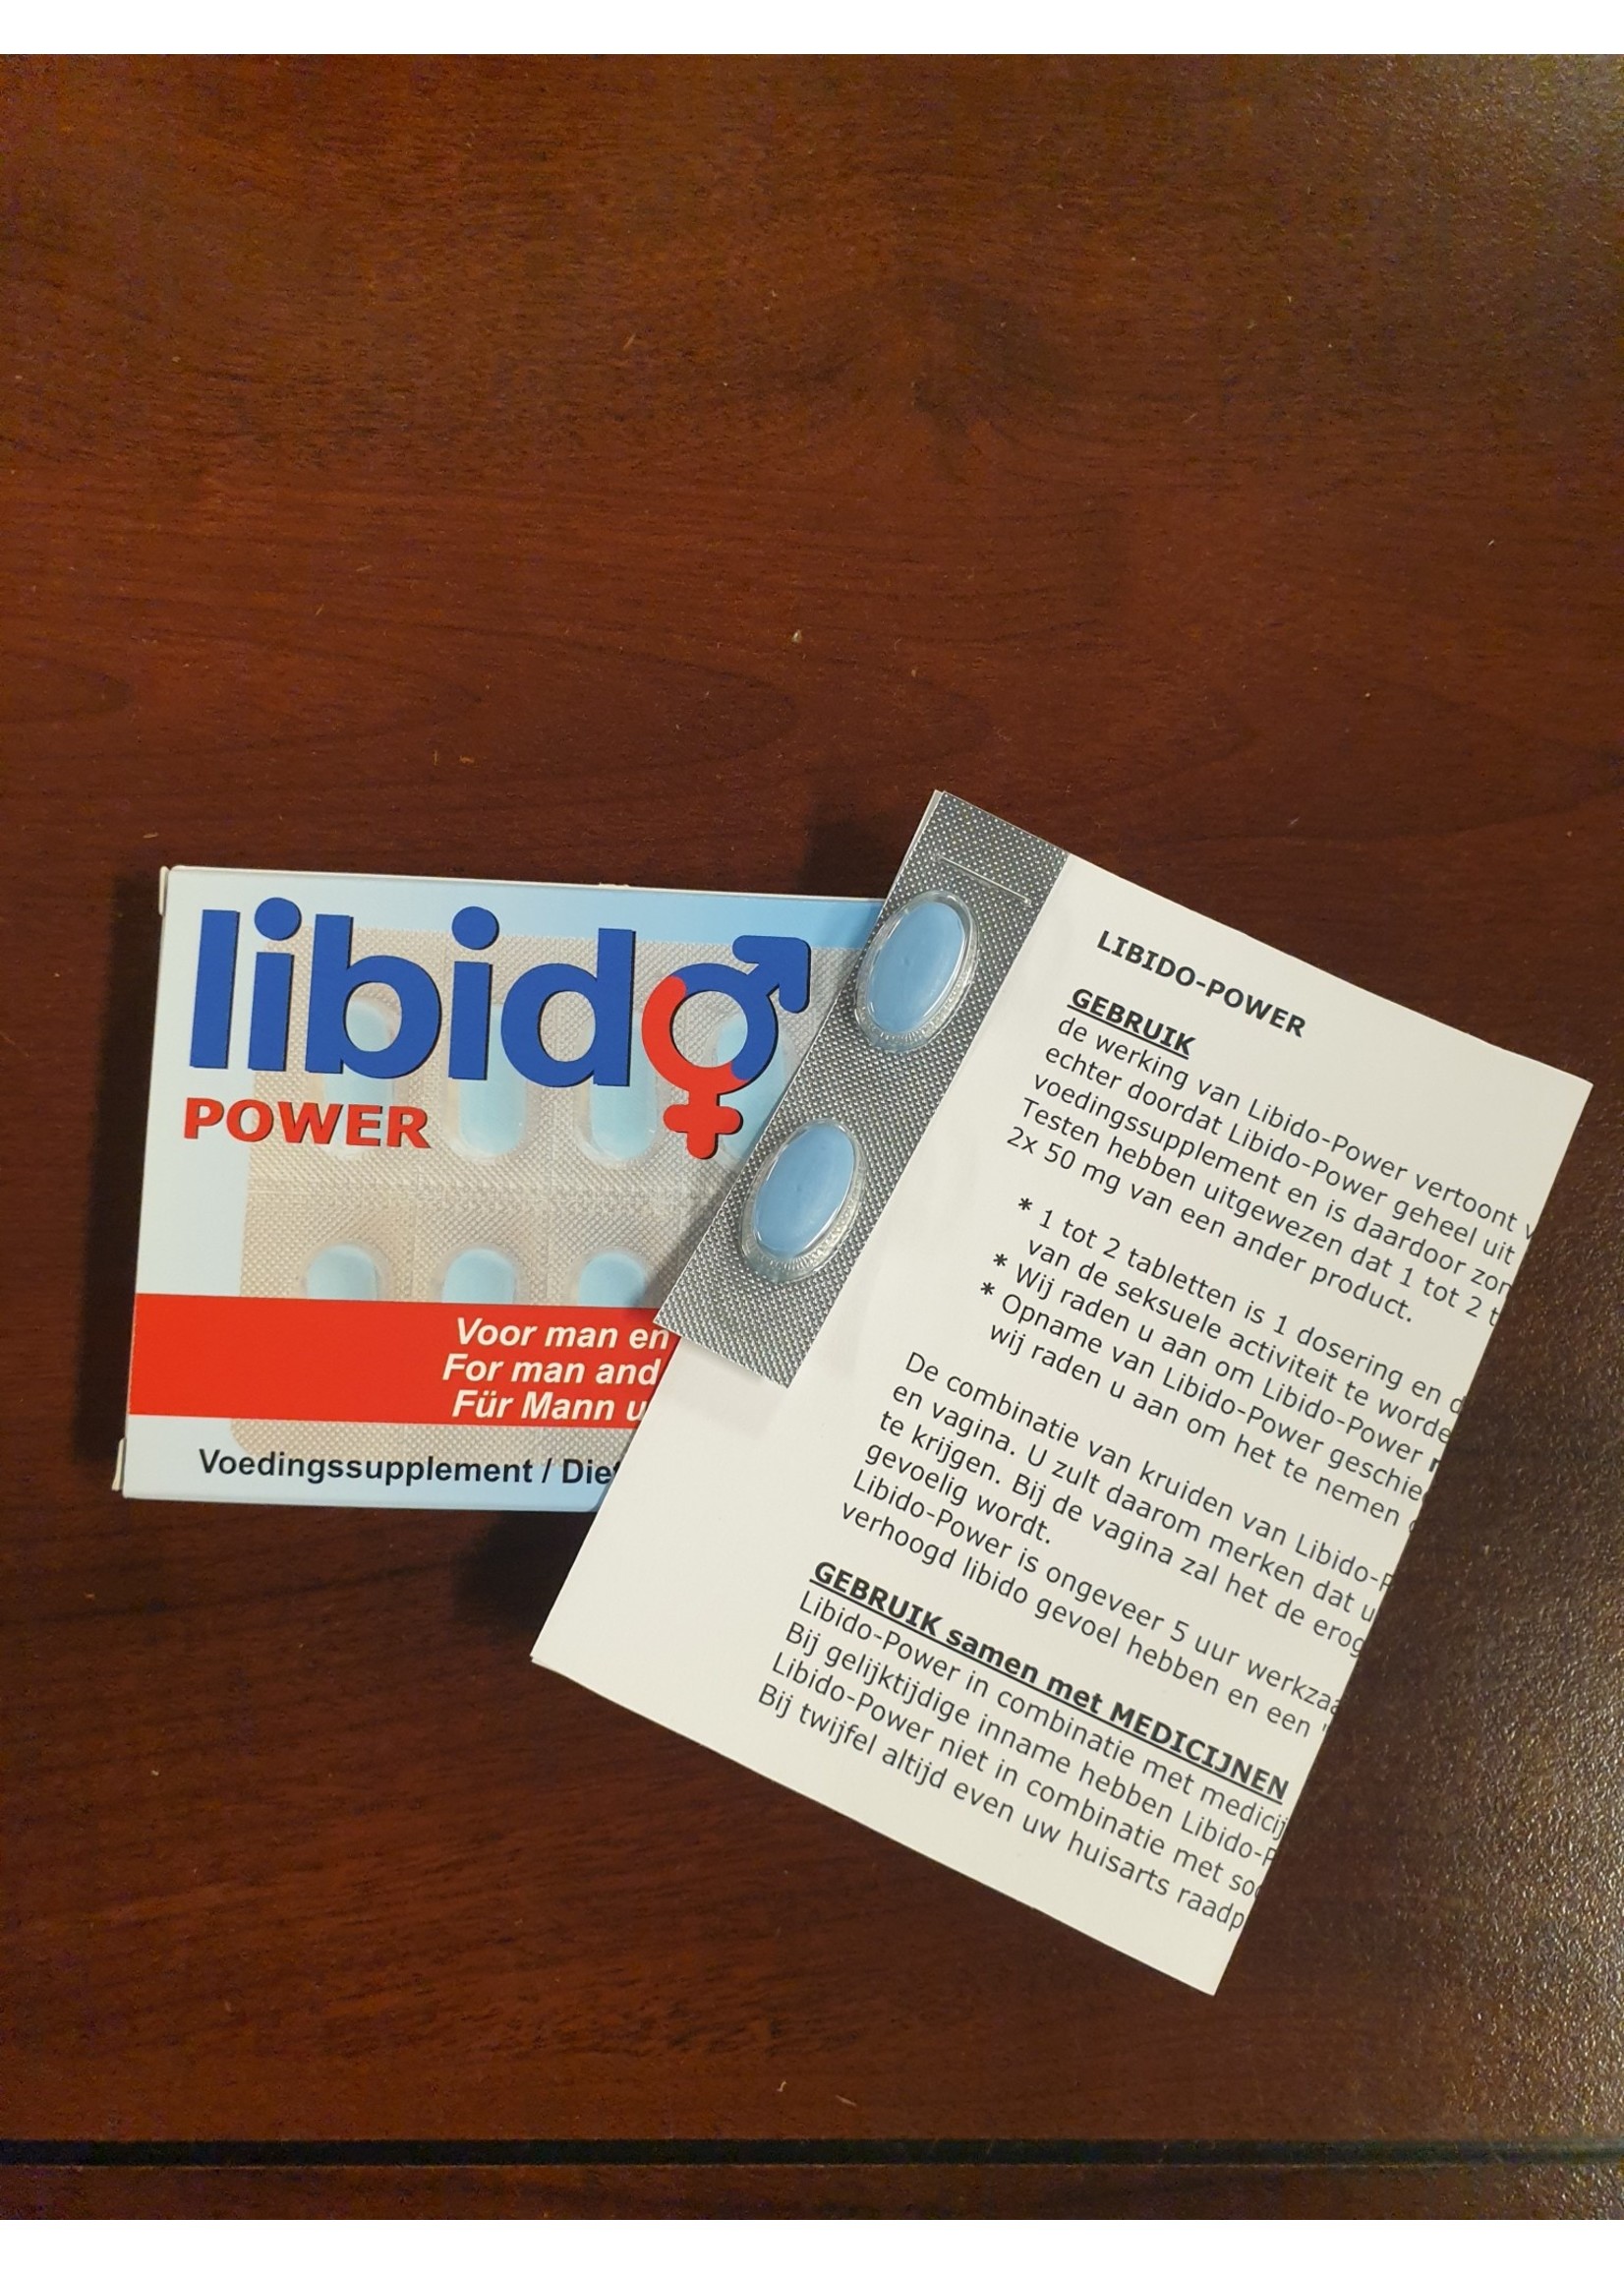 Libido power - 2st.